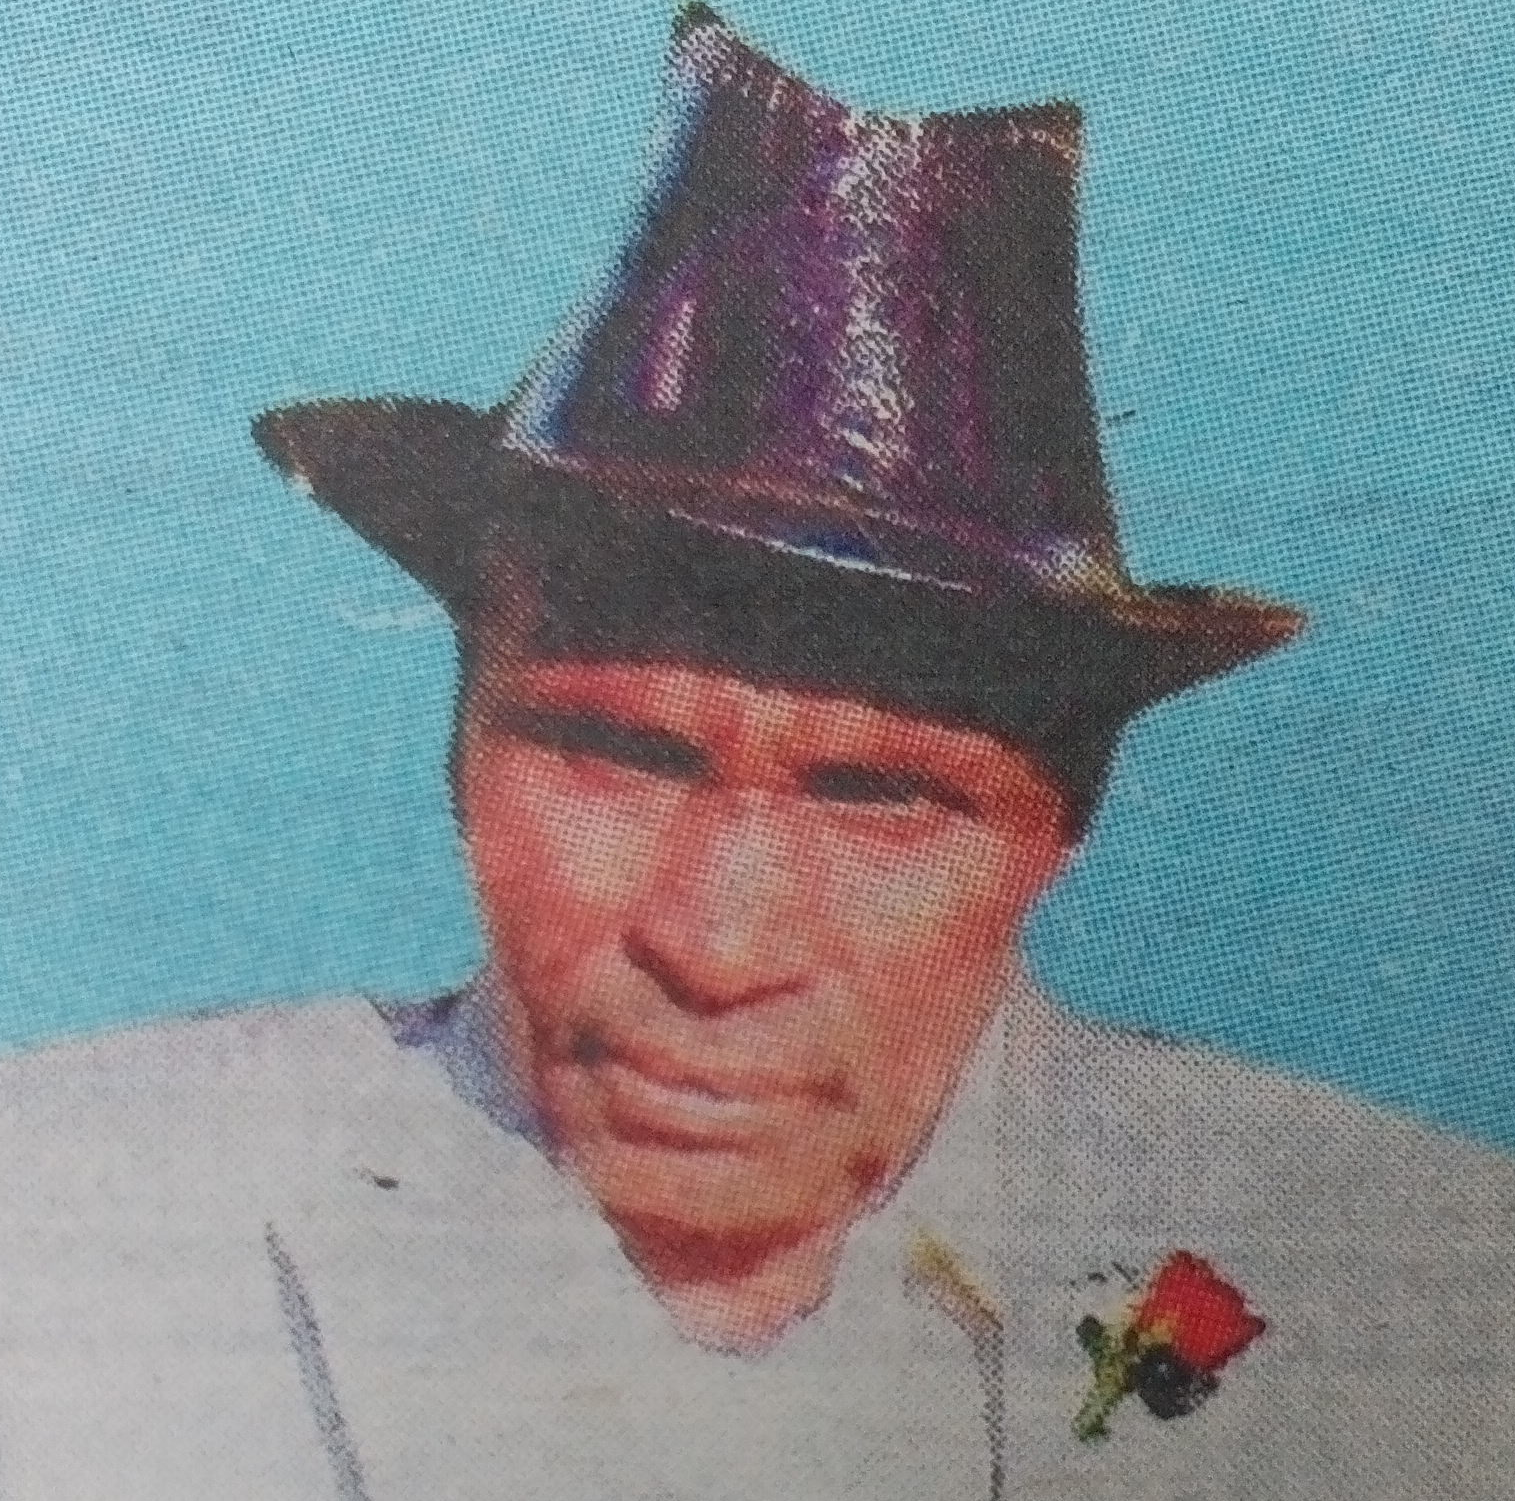 Obituary Image of Joseph Aiyabei Cheboswony